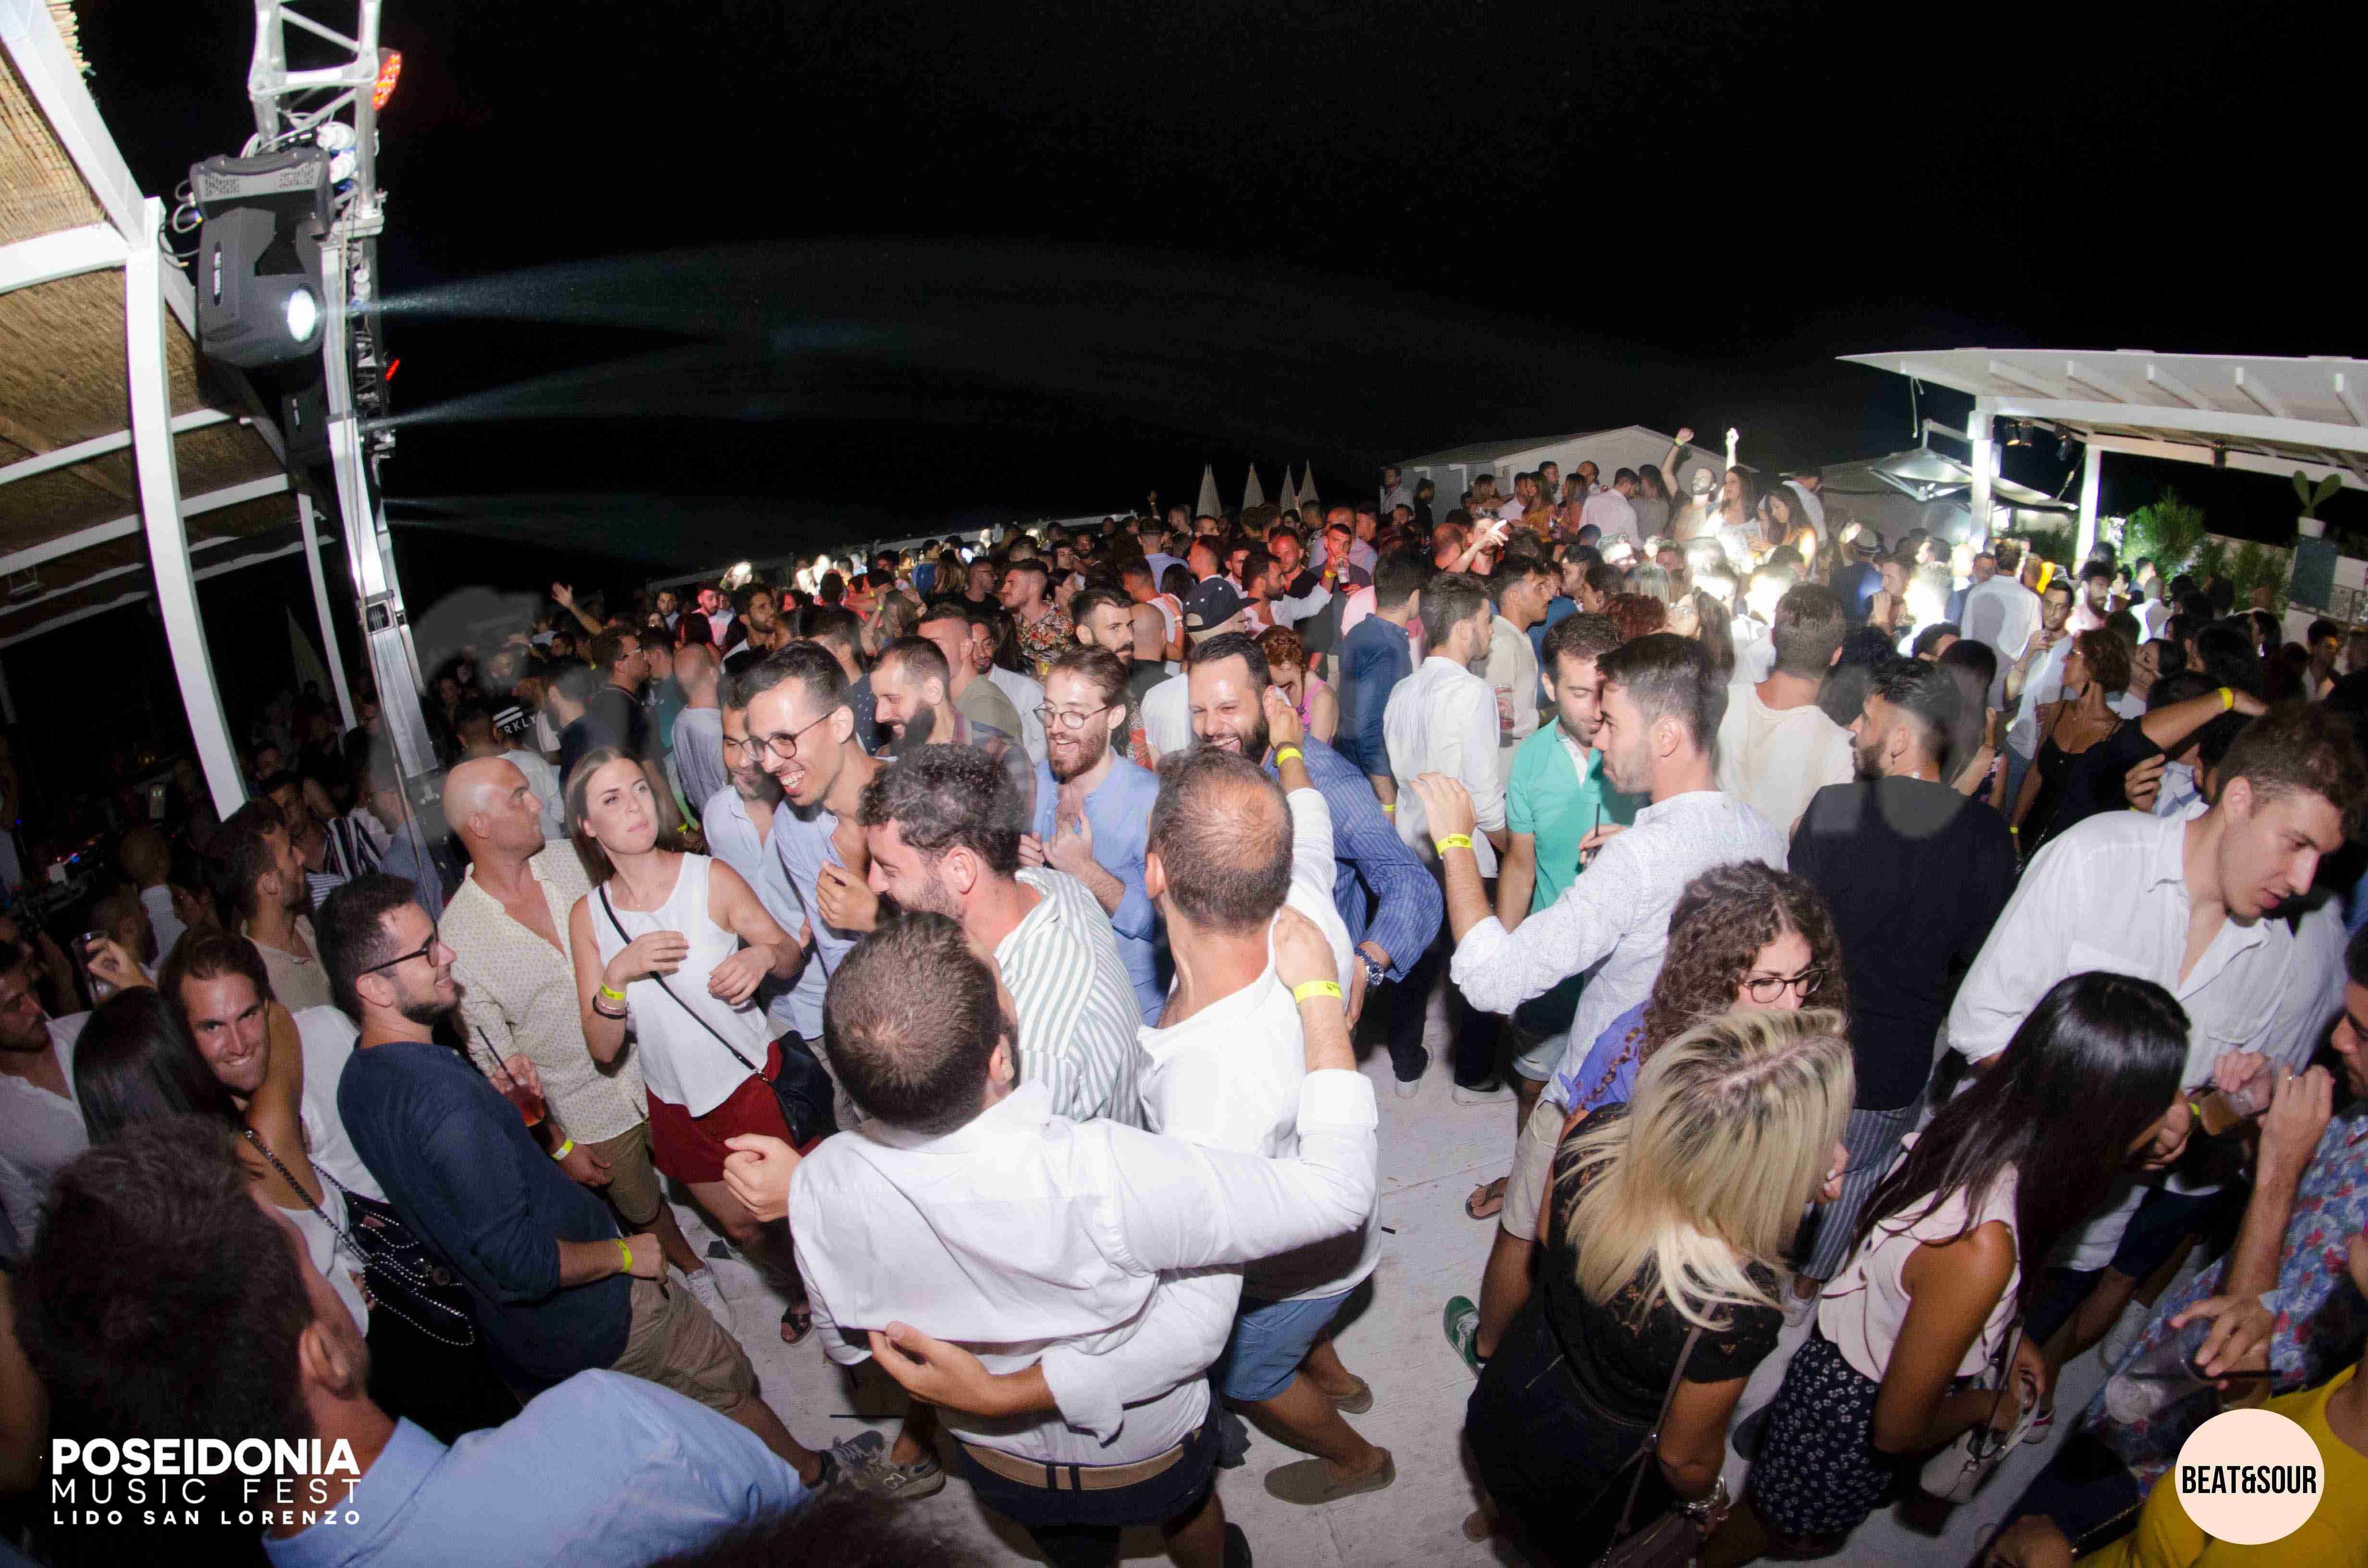 A Ferragosto si balla sotto il cielo di San Lorenzo: continua il Poseidonia Music Fest